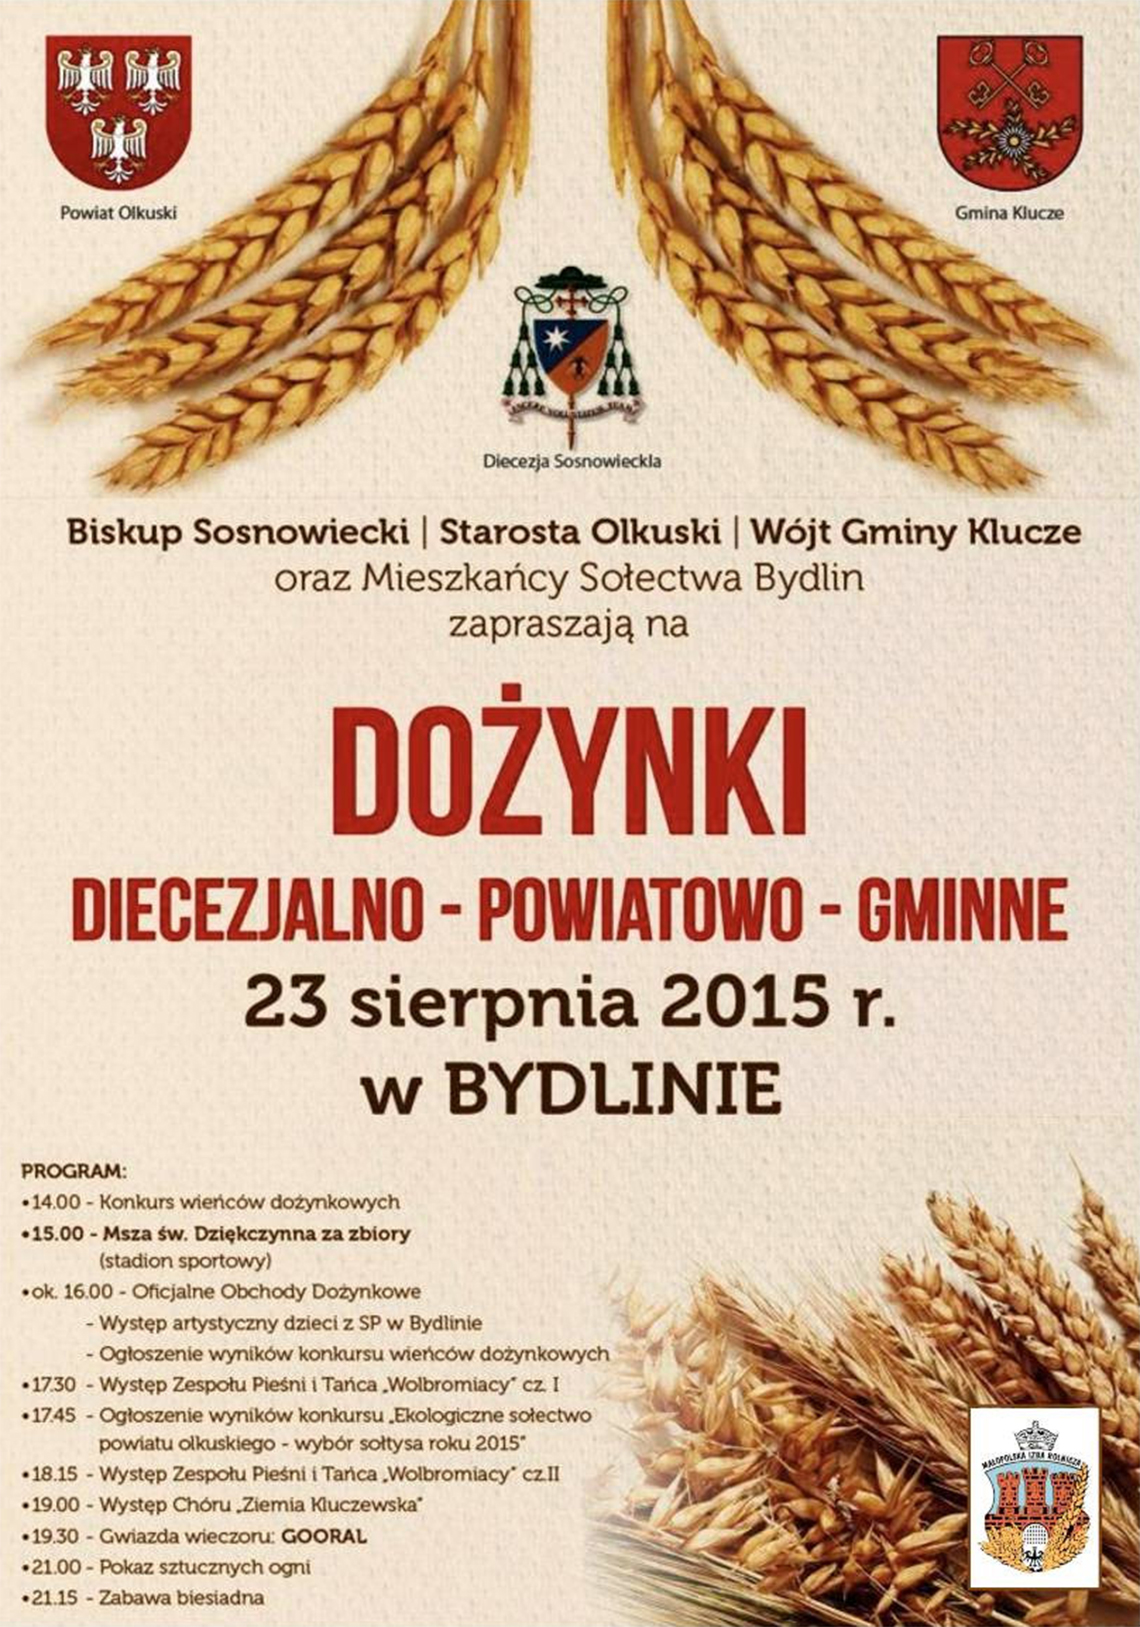 Dożynki Diecezjalno - Powiatowo - Gminne Bydlin 23.08.2015 r. (plakat)